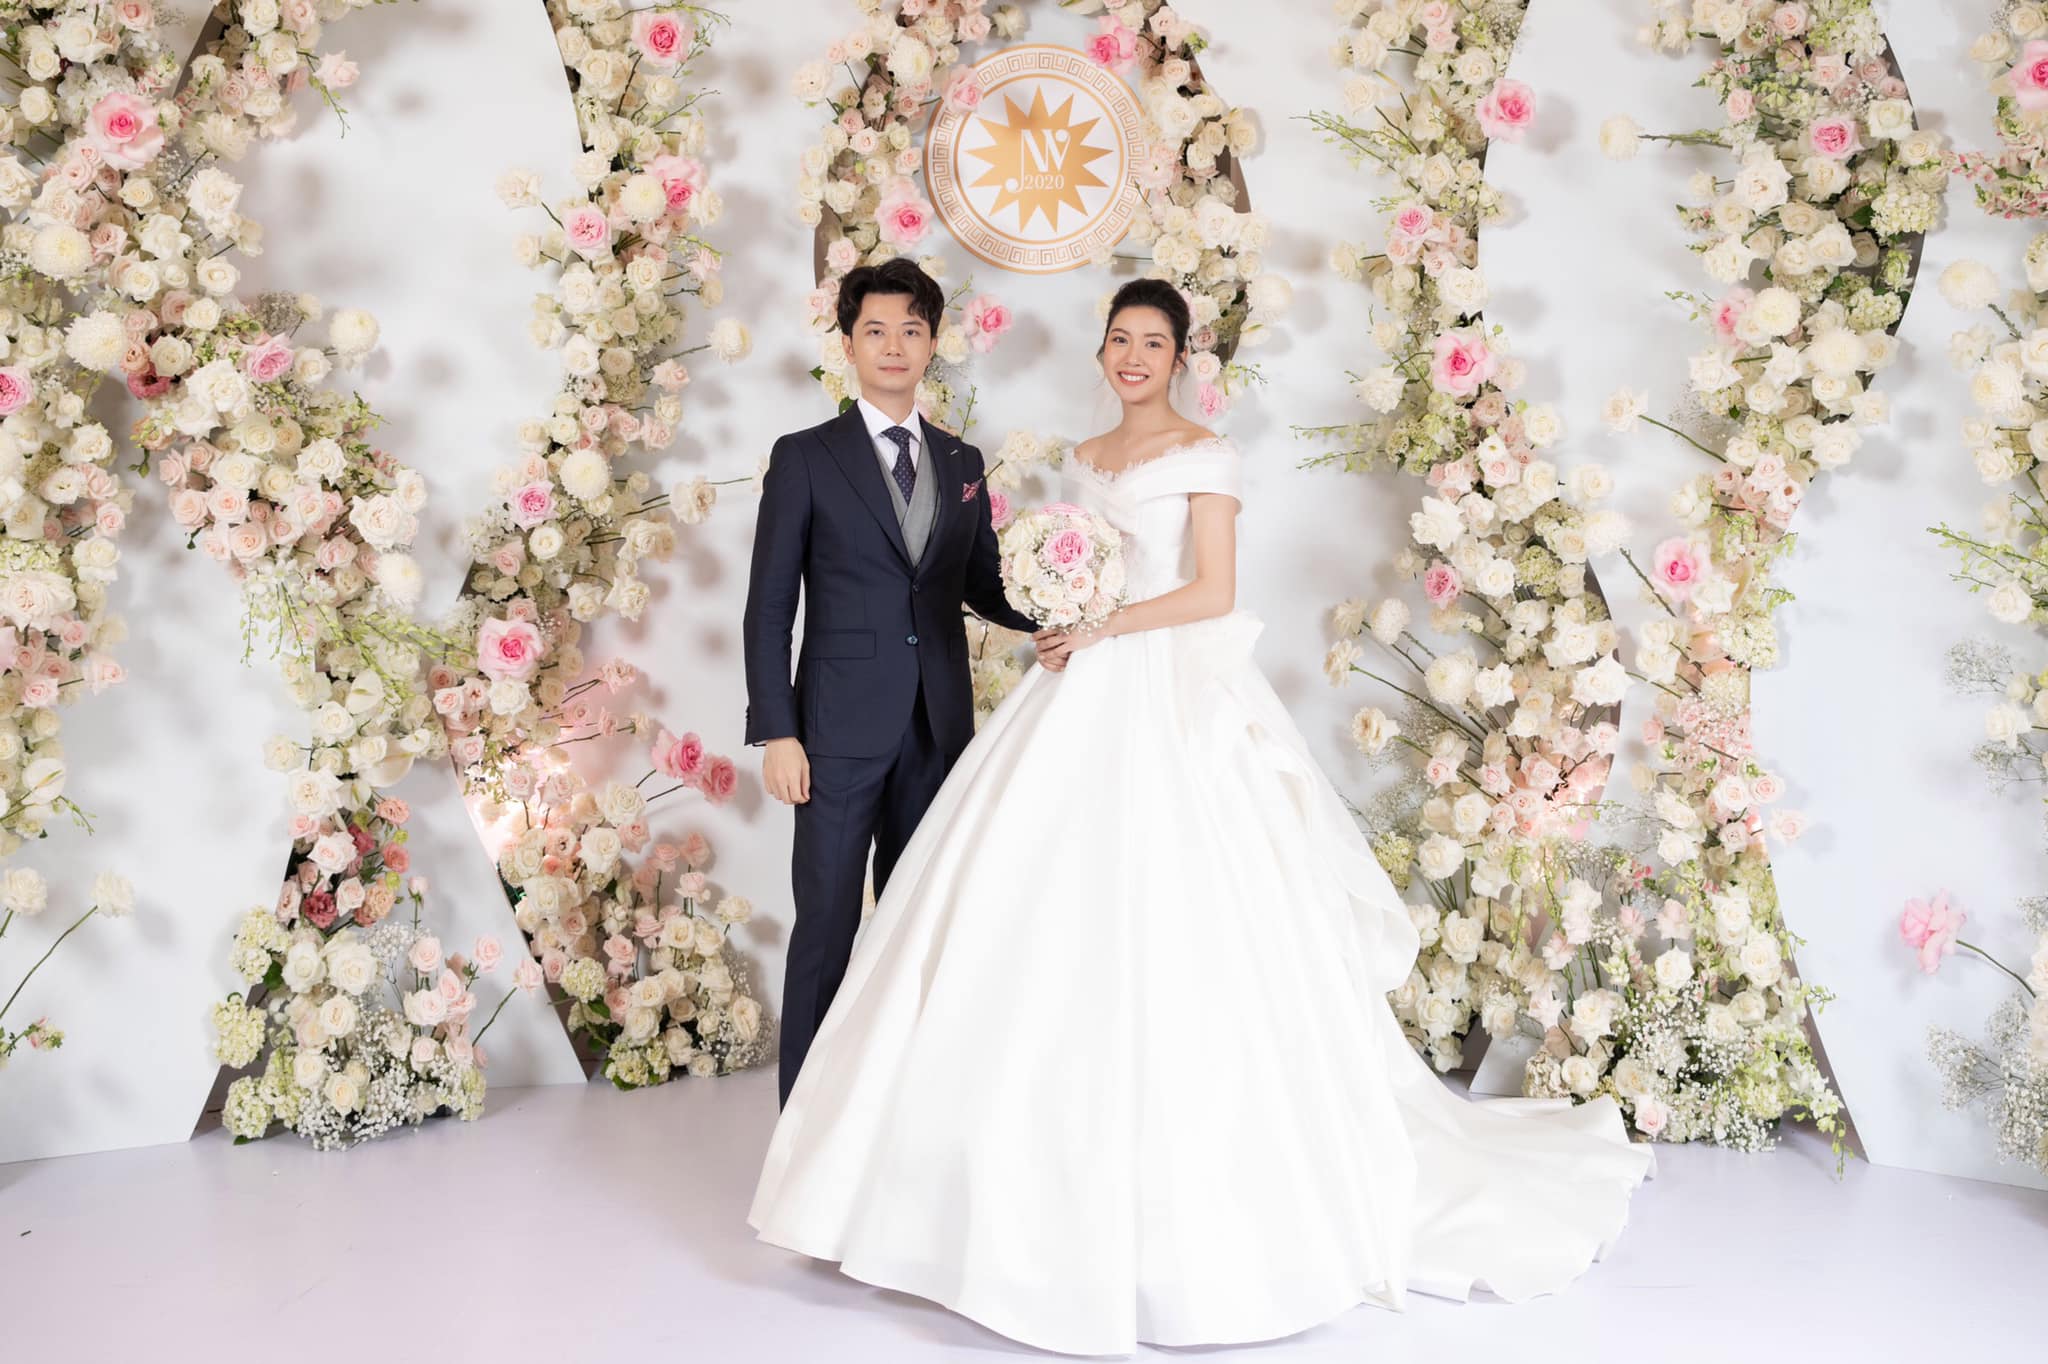 Đám cưới của cặp đôi Thúy Vân - Hoàng Nhật vừa diễn ra tại một khách sạn 5 sao sang trọng